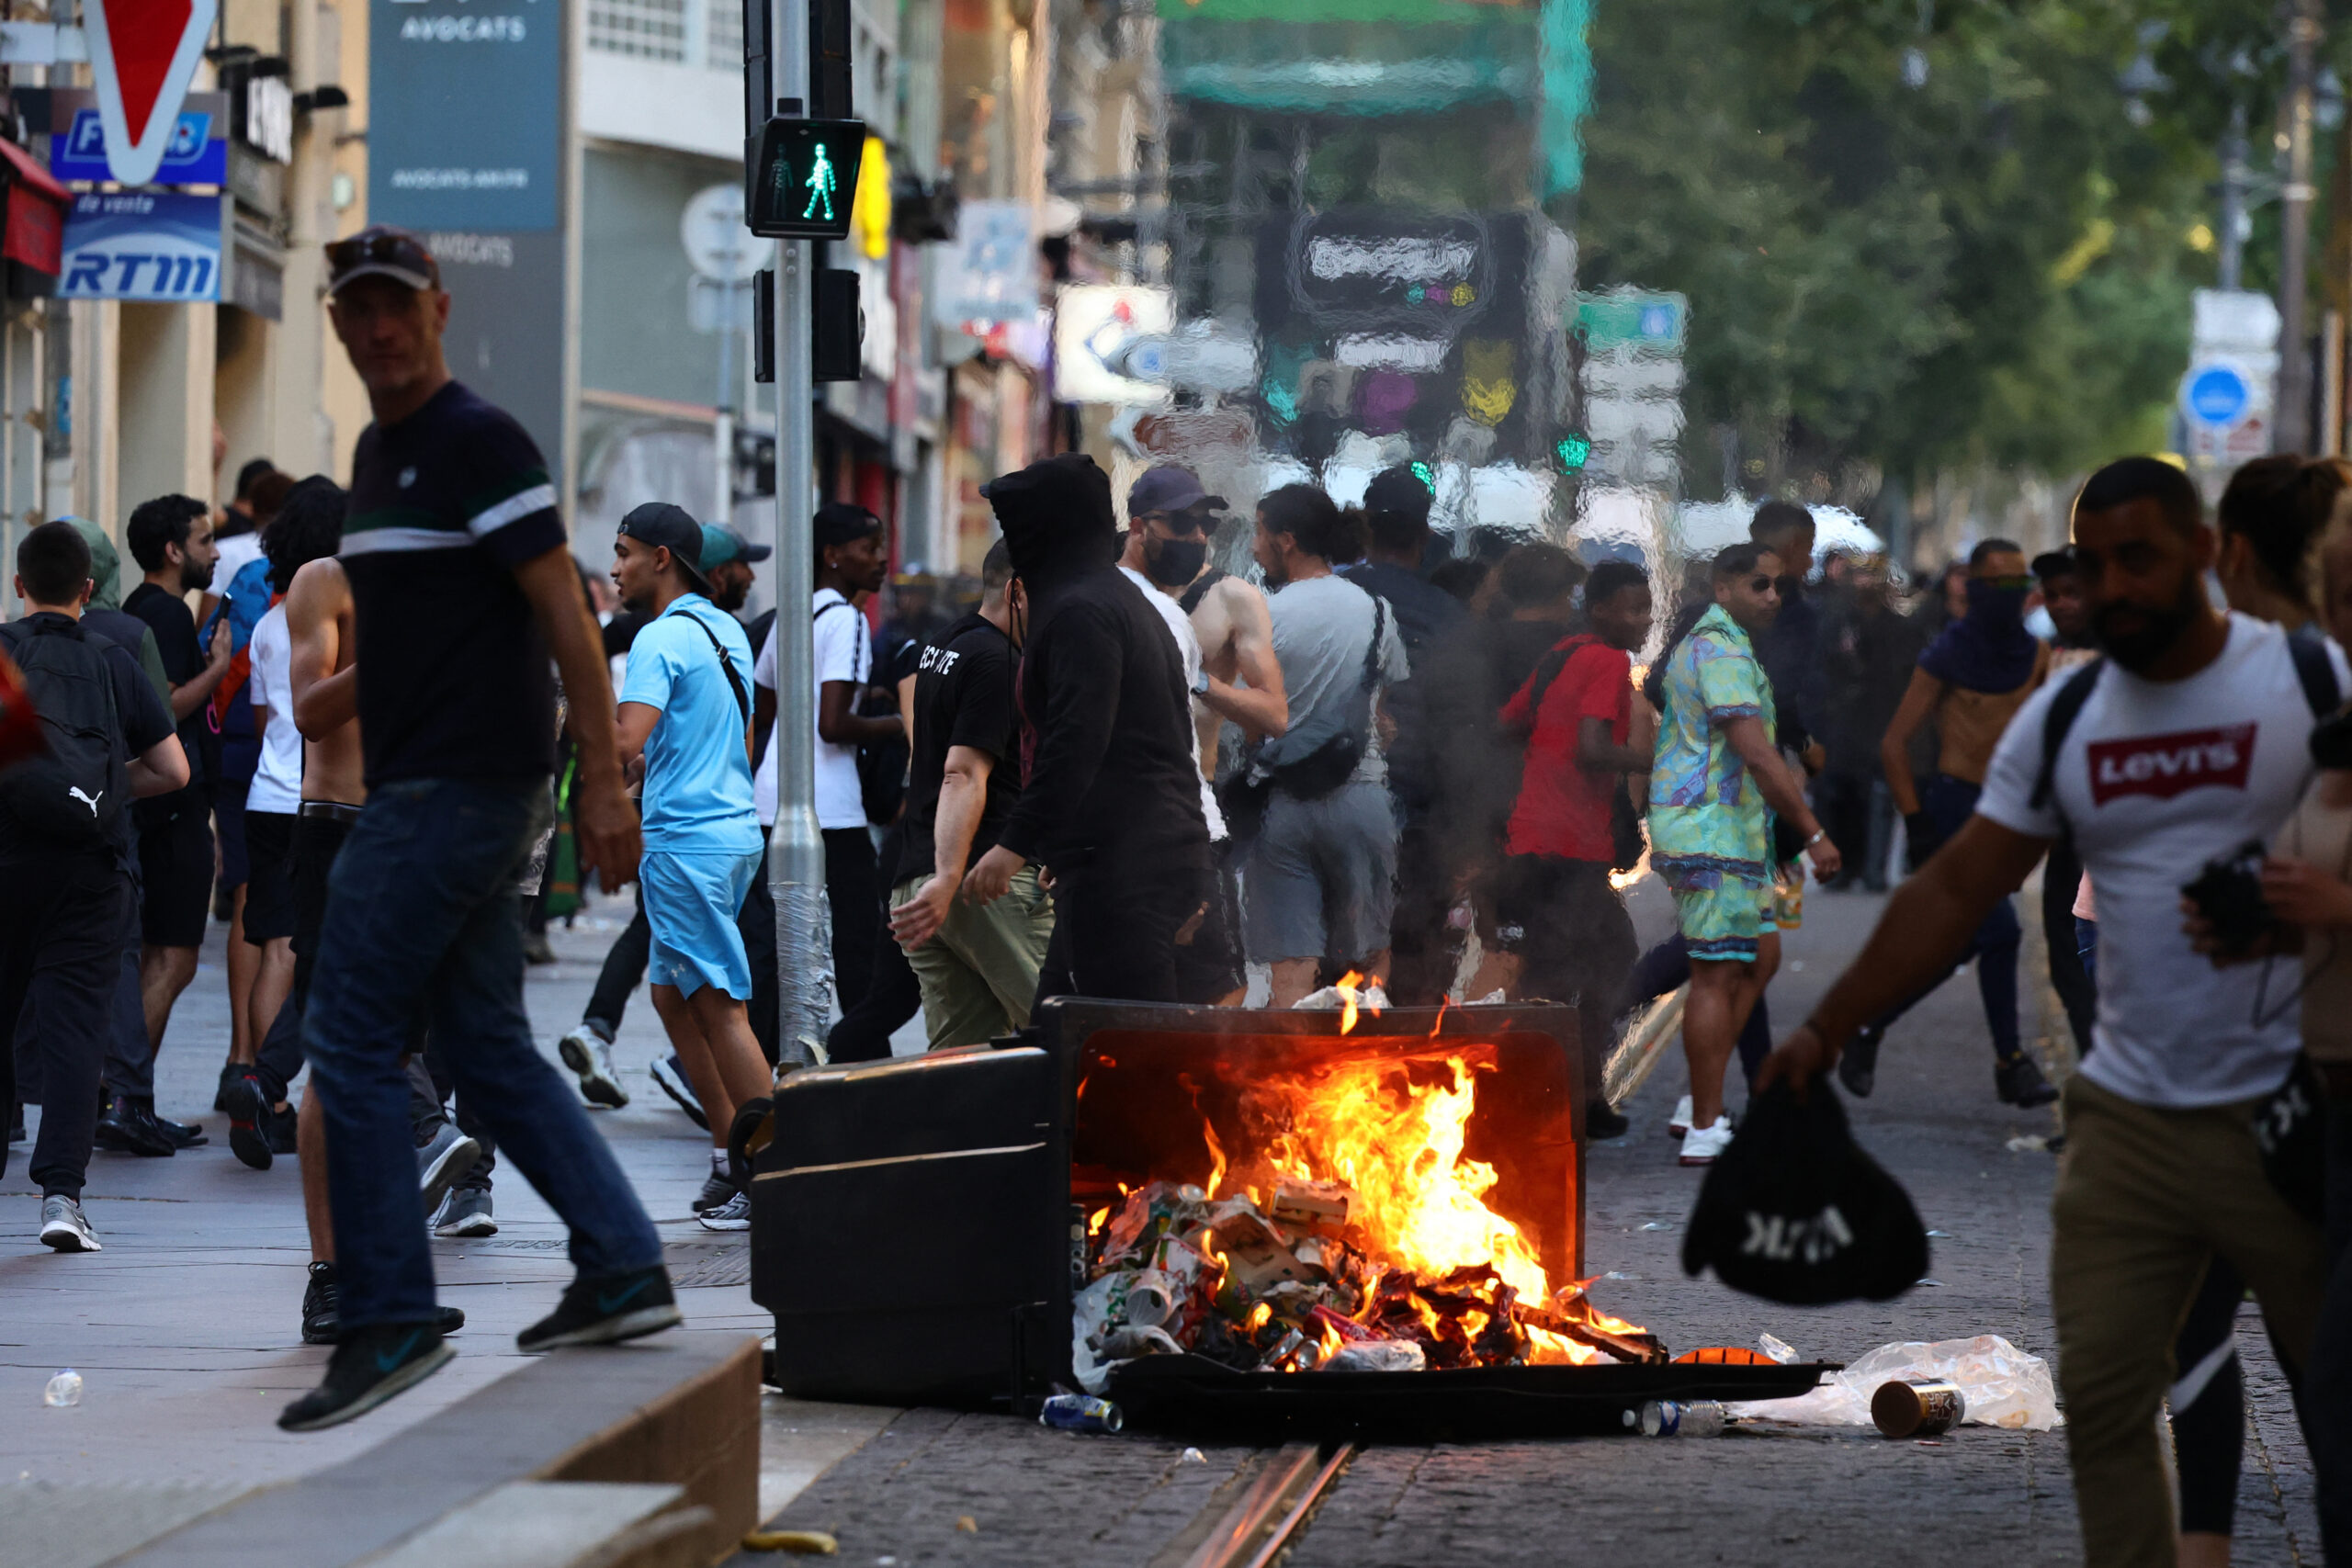 Σε σοκ η Γαλλία μετά την επίθεση σε σπίτι Δημάρχου – Συνεχίζεται το κύμα βίας με φωτιές, λεηλασίες και συλλήψεις